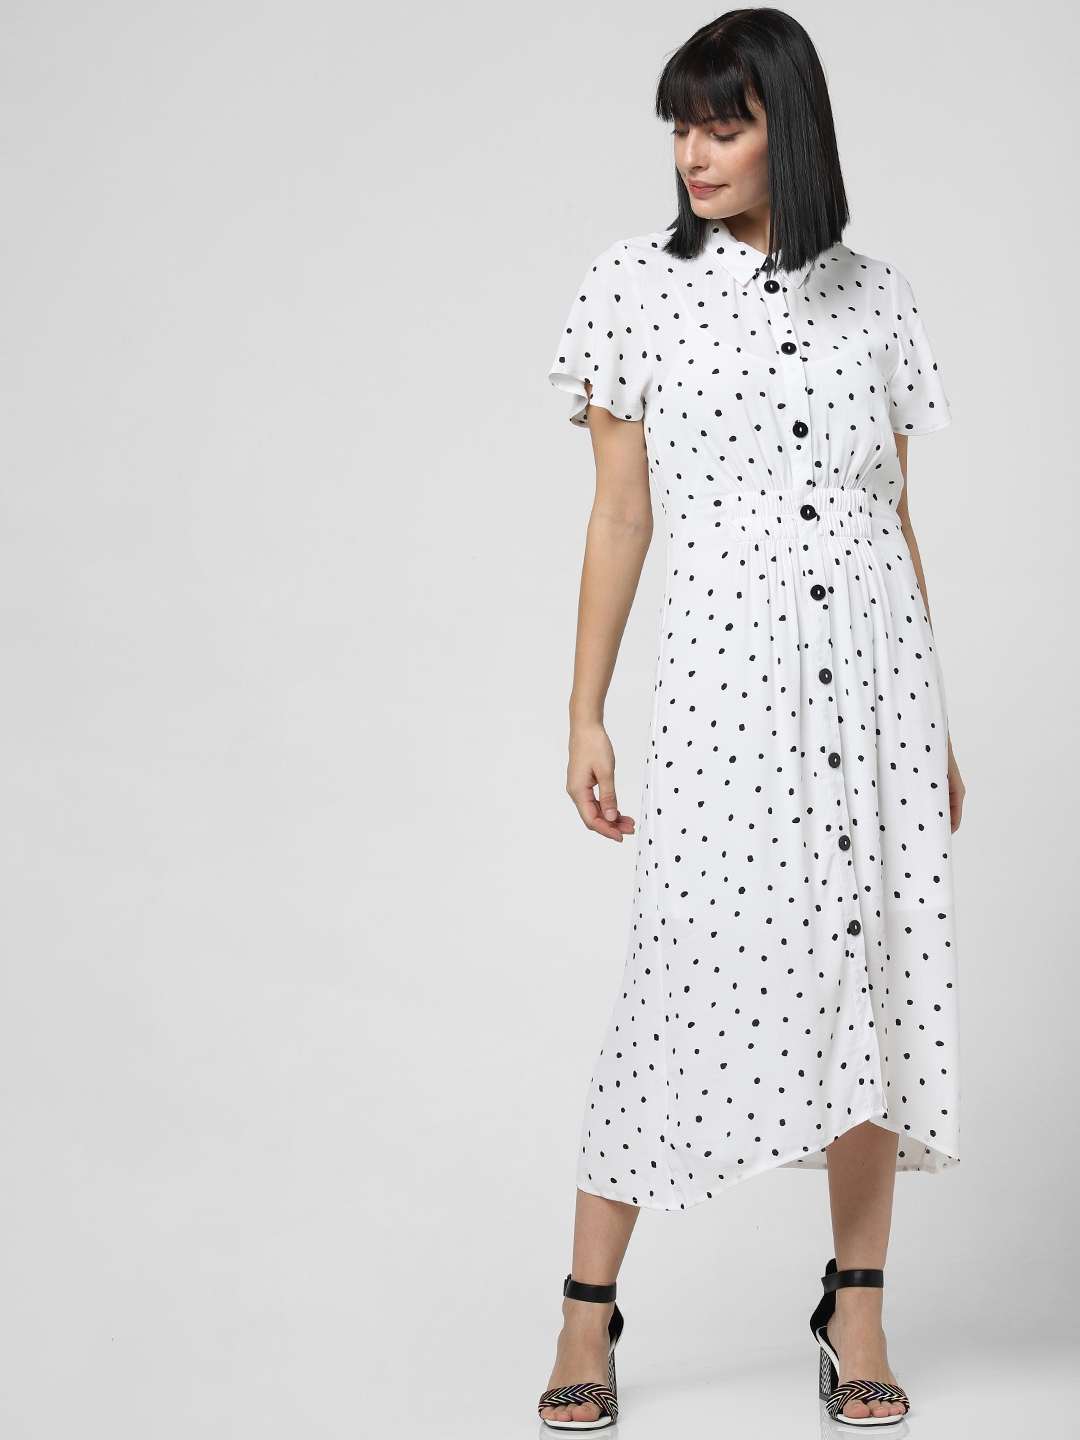 Vero Moda Women White   Black Polka Dot Print Shirt Dress